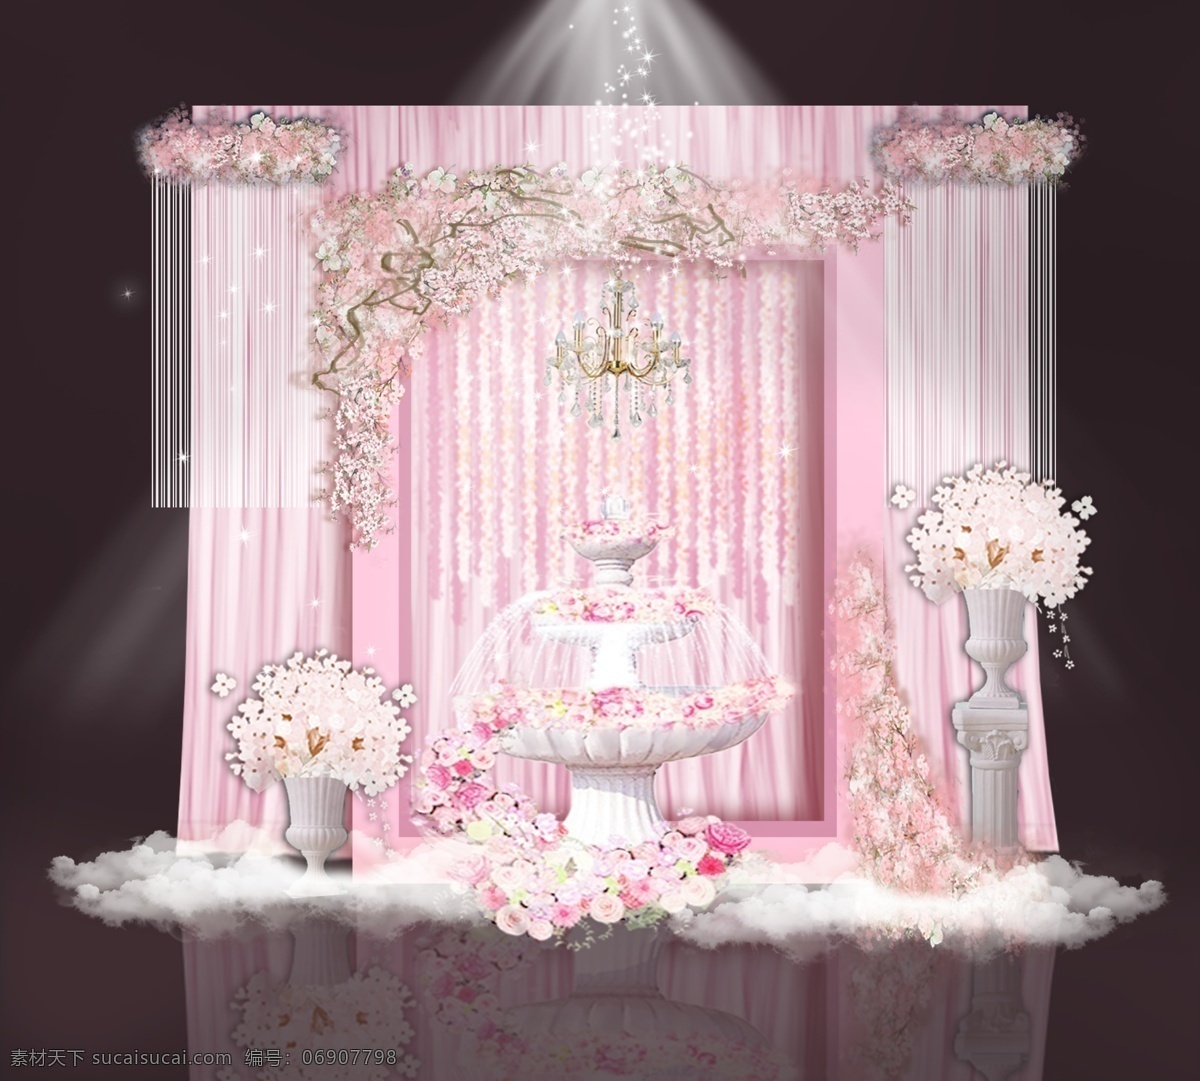 粉色 婚礼 展示区 效果图 粉色婚礼 粉色梦幻婚礼 婚礼展示区 婚礼效果图 婚礼合影区